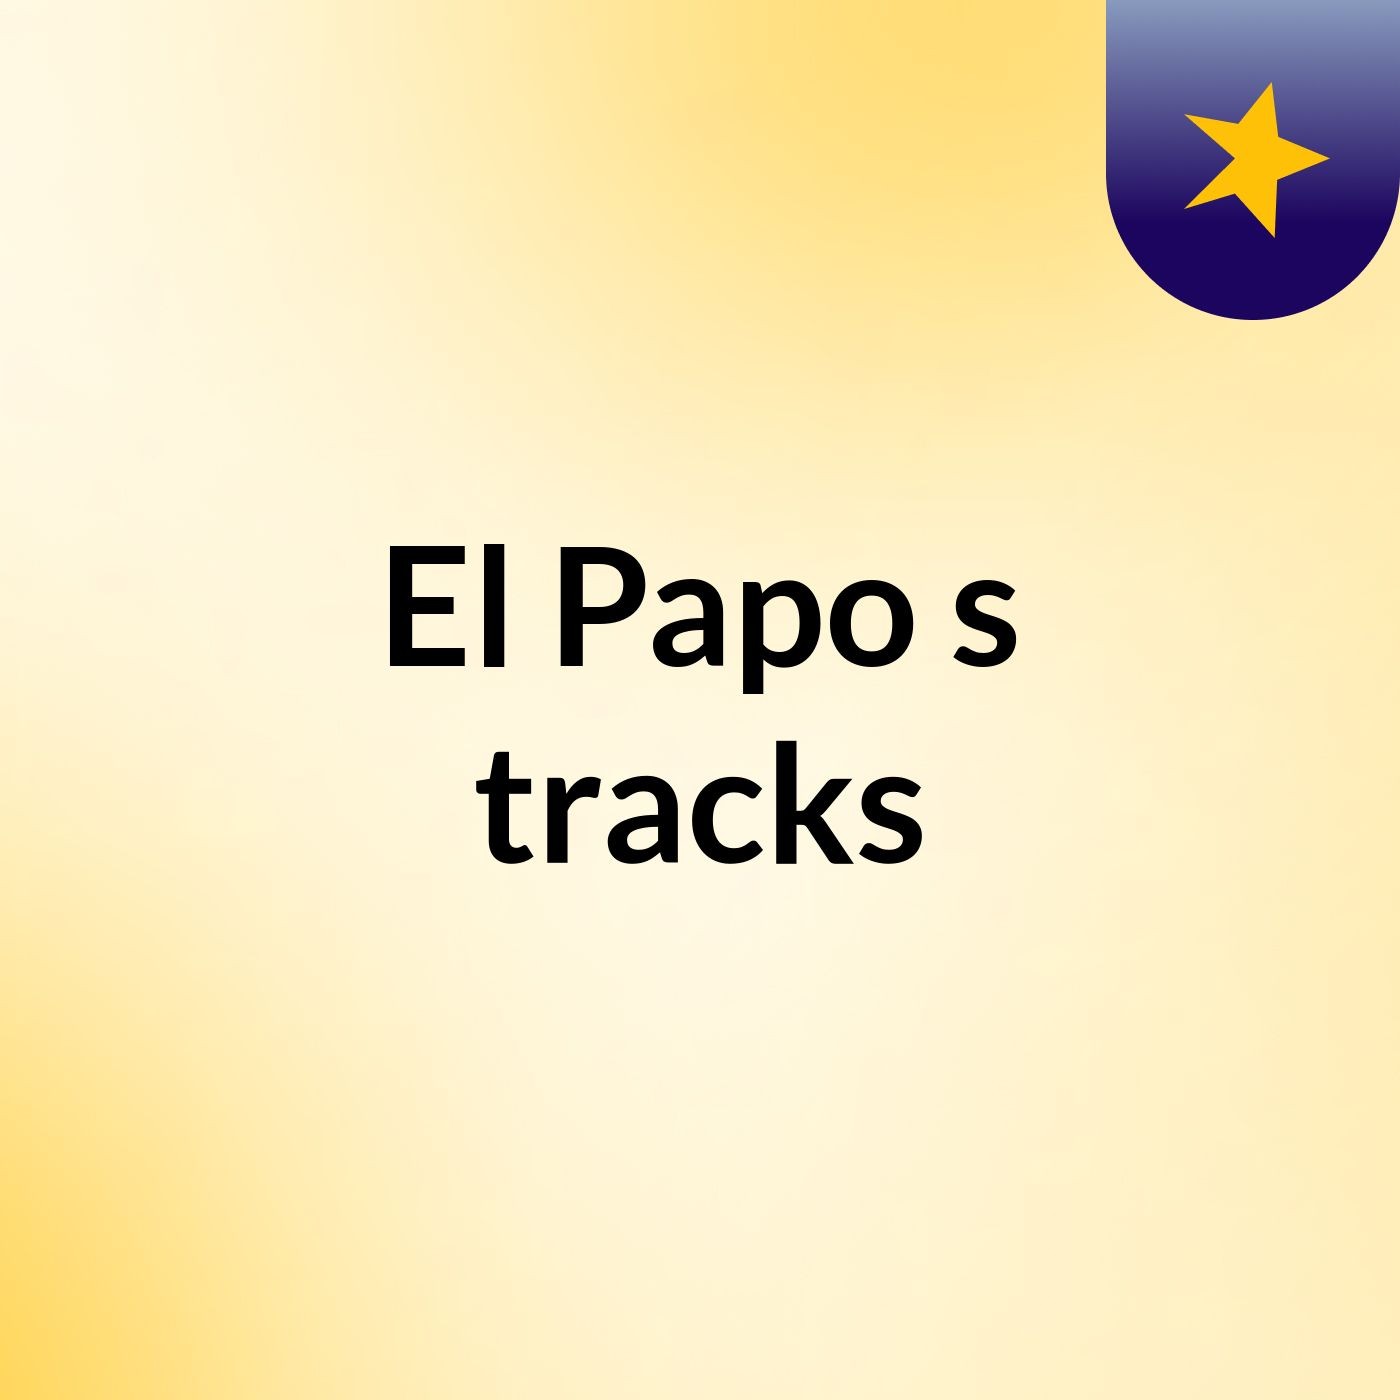 El Papo's tracks